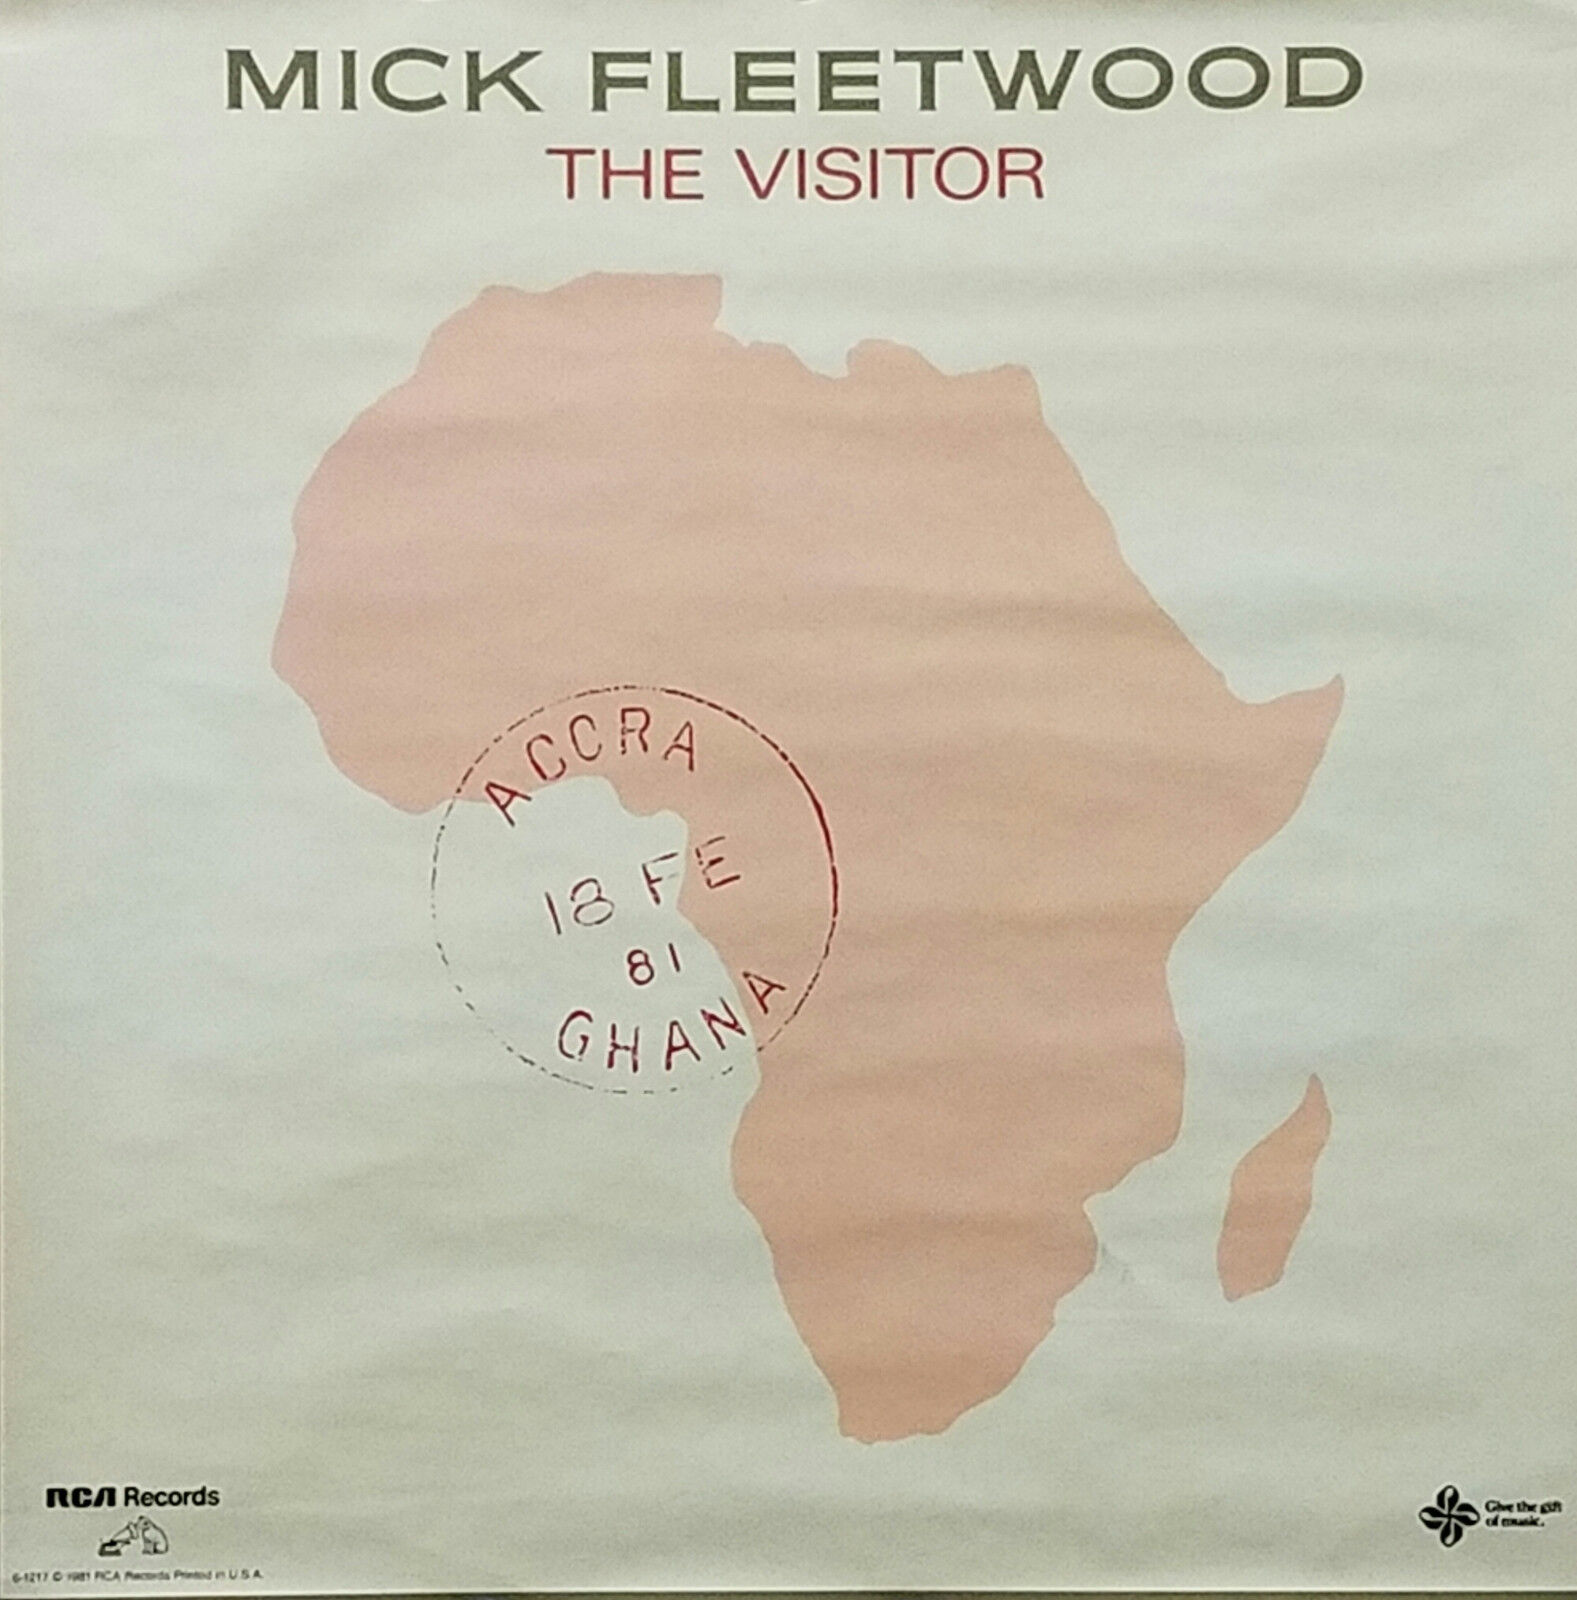 Fleetwood Mac Mick Fleetwood 1981 The Visitor Original Promo Poster